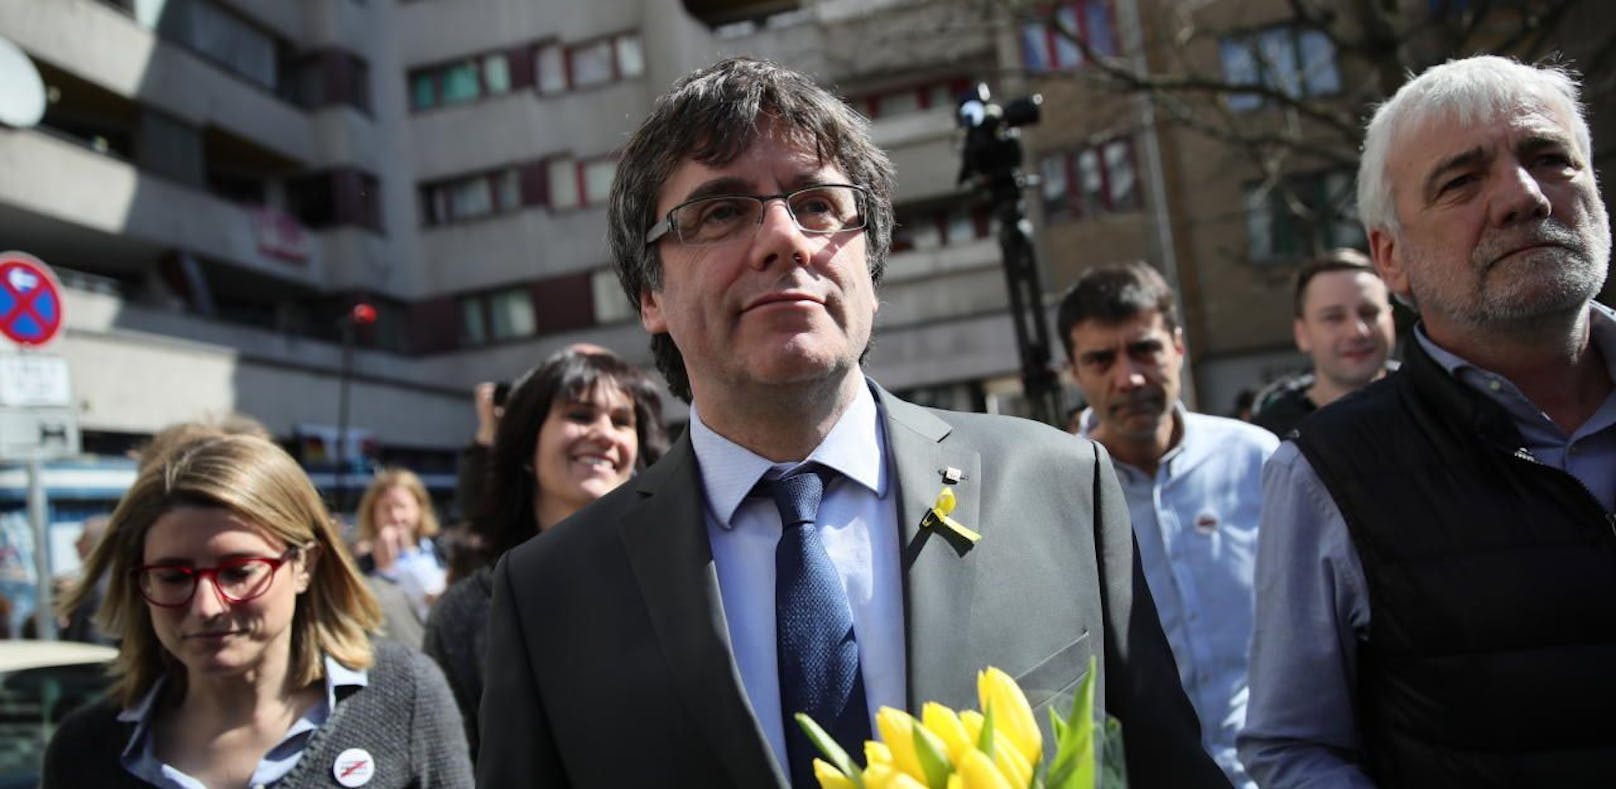 Gericht lehnt Haftantrag gegen Puigdemont ab